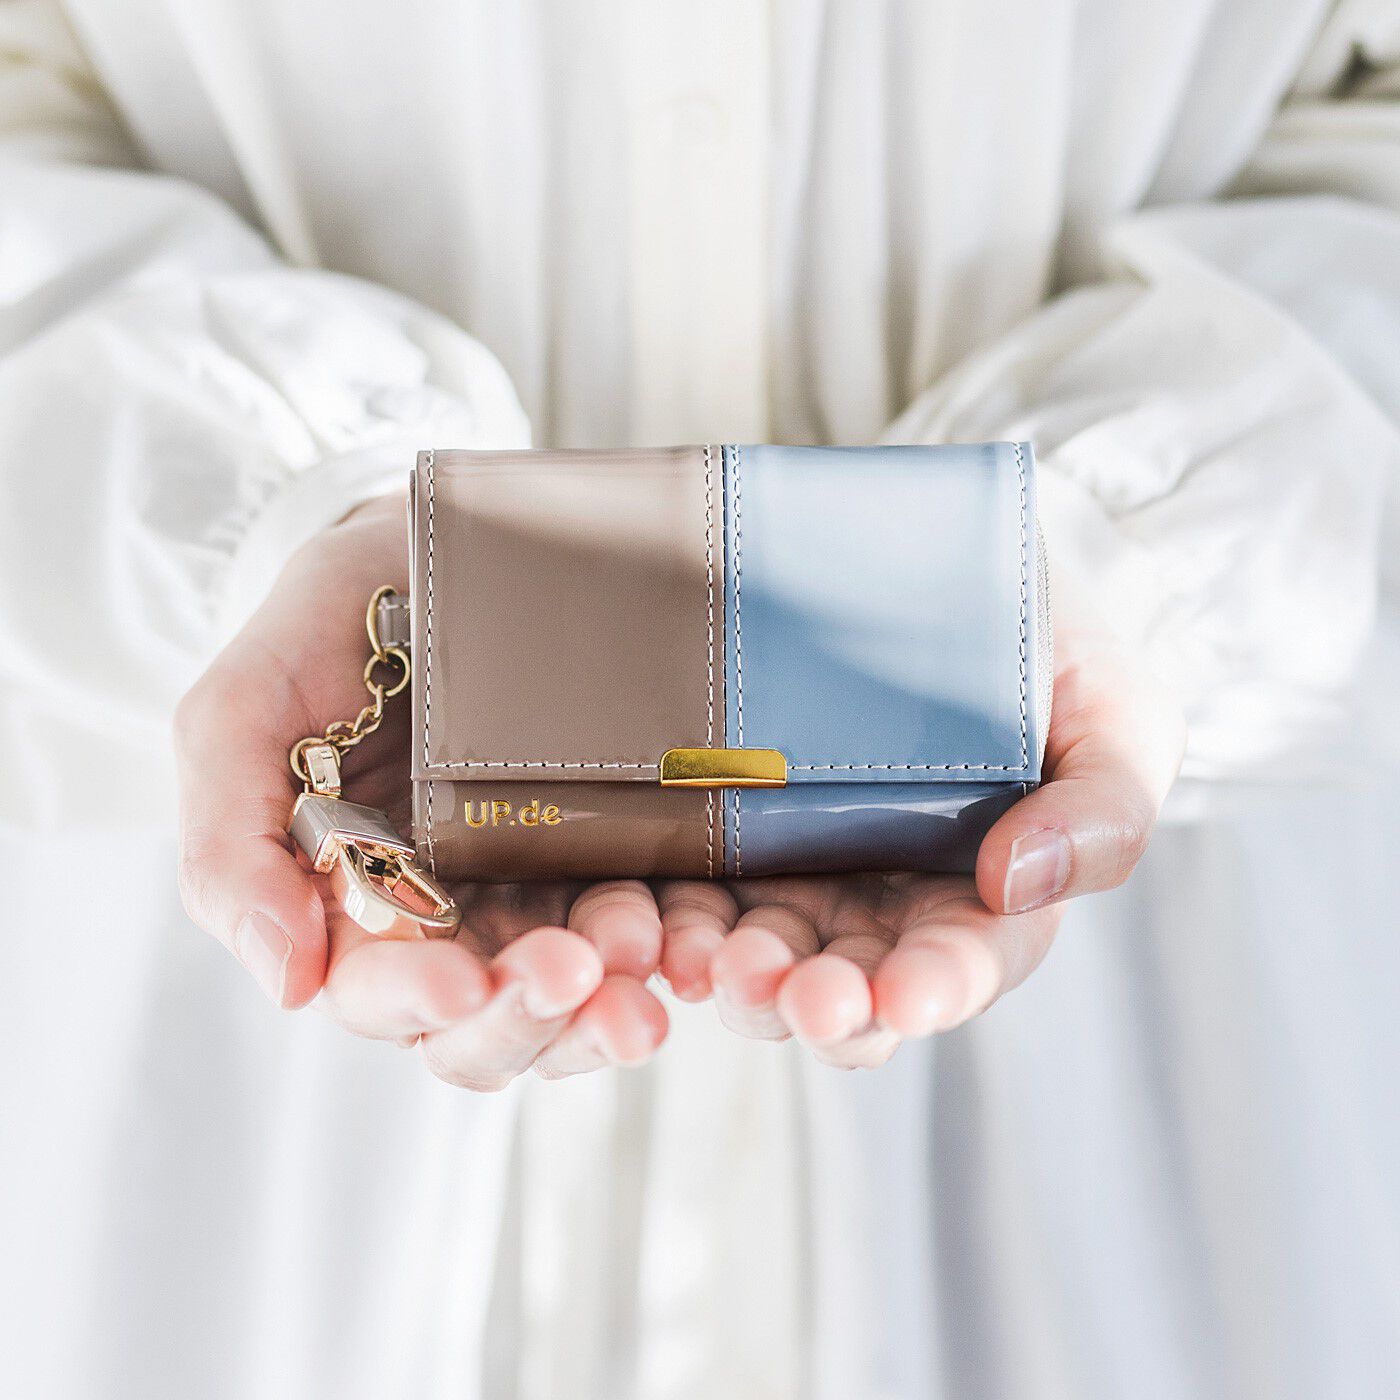 フェリシモの雑貨 Kraso|UP.de　キーリング付き 必要なものがきちんと収まる 手のひらサイズの大人エナメル財布の会